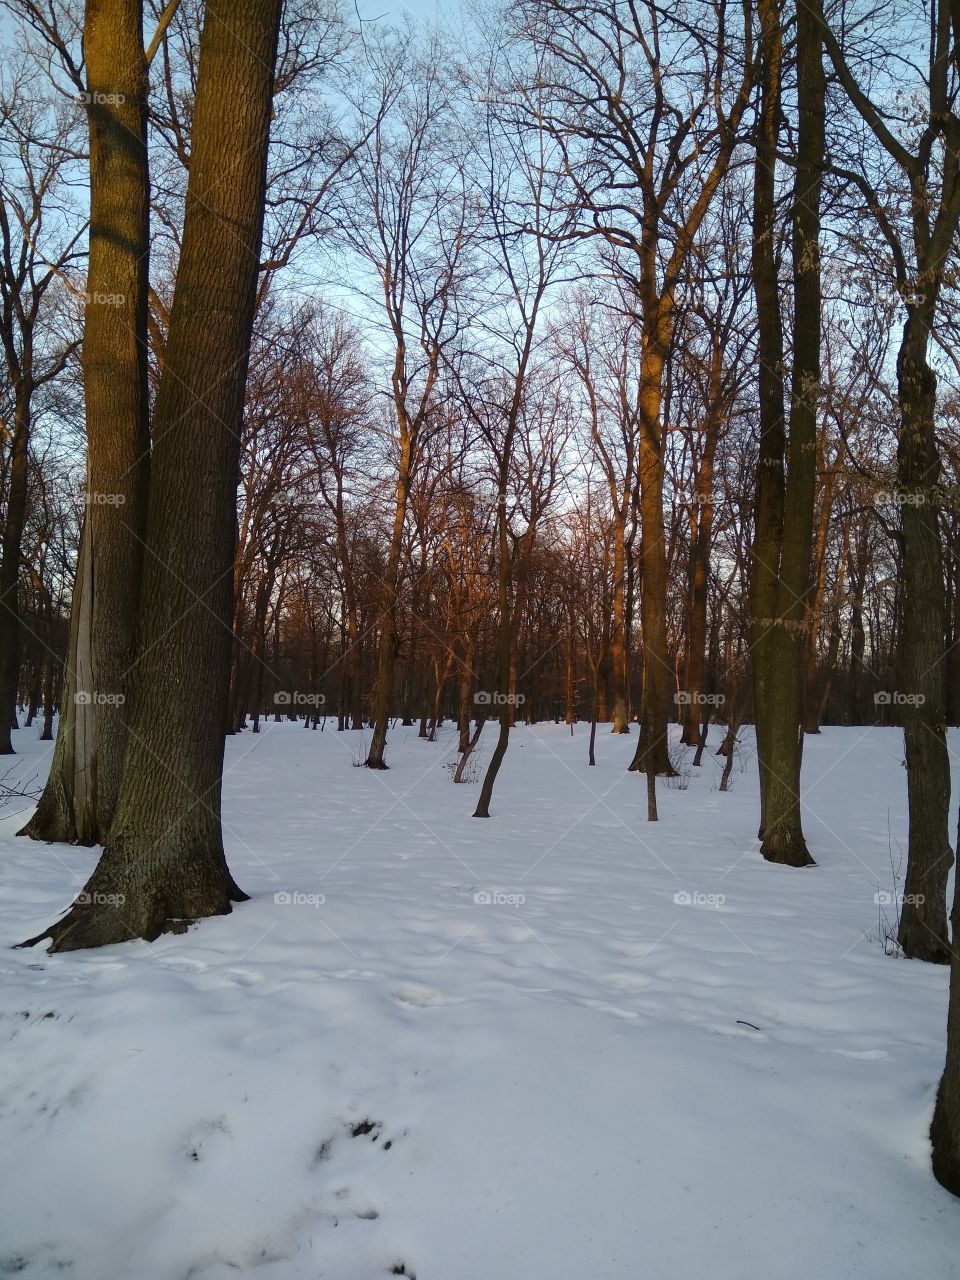 Конец зимы начало весны в бучанском парке, пригород Киева. Чистый воздух, спокойная природа, последние лучи заходящего солнца.